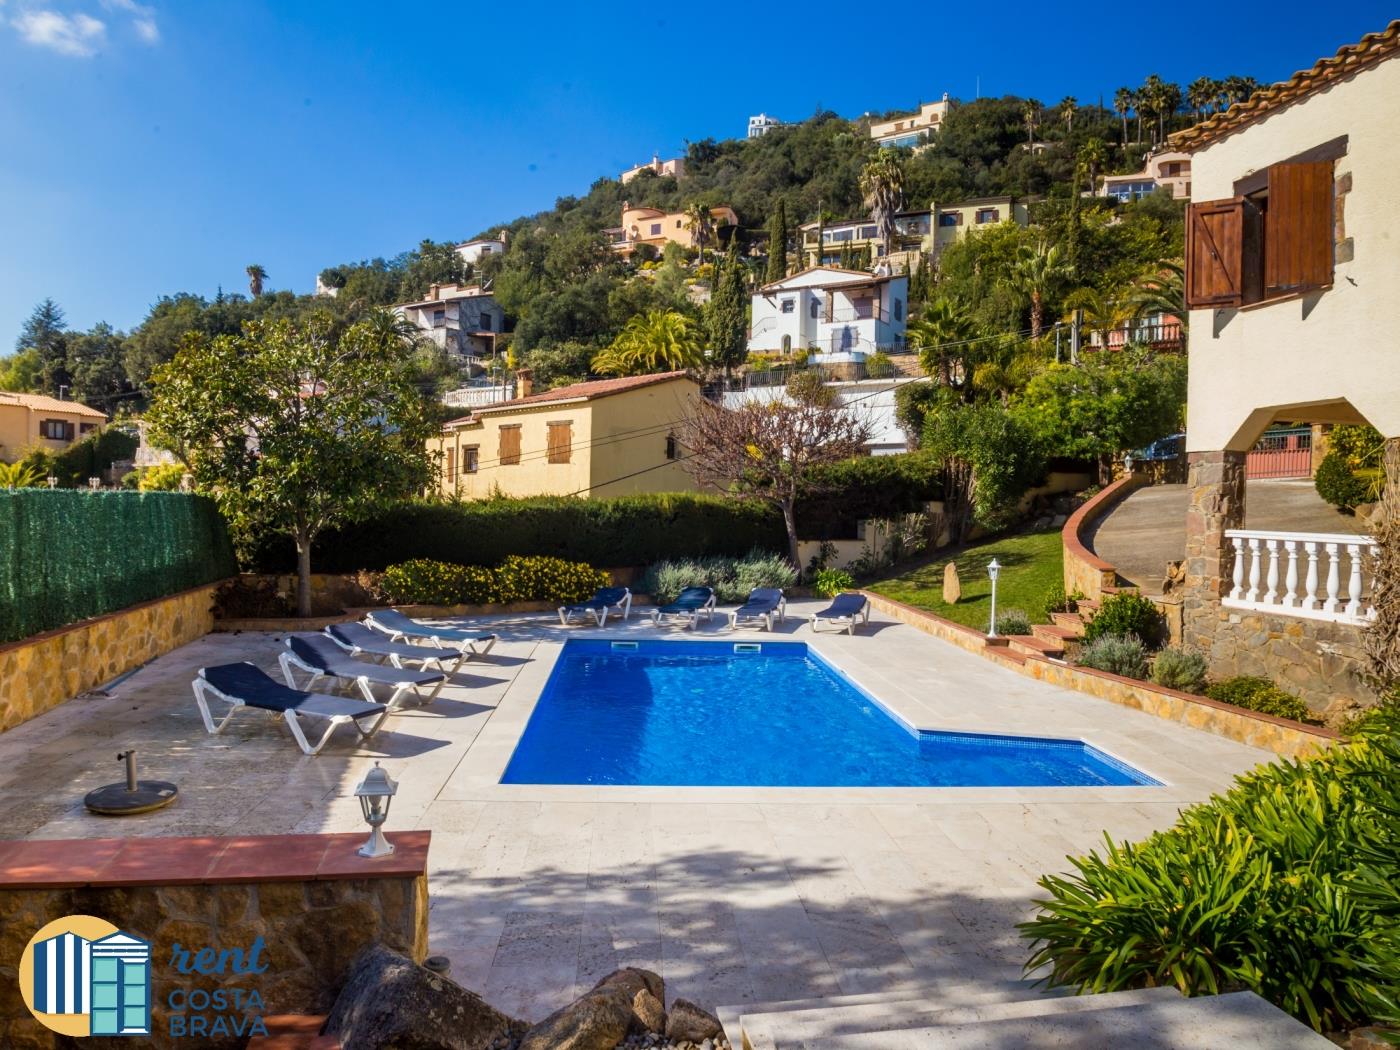 Villa La Gallega with private garden and heated pool in Calonge